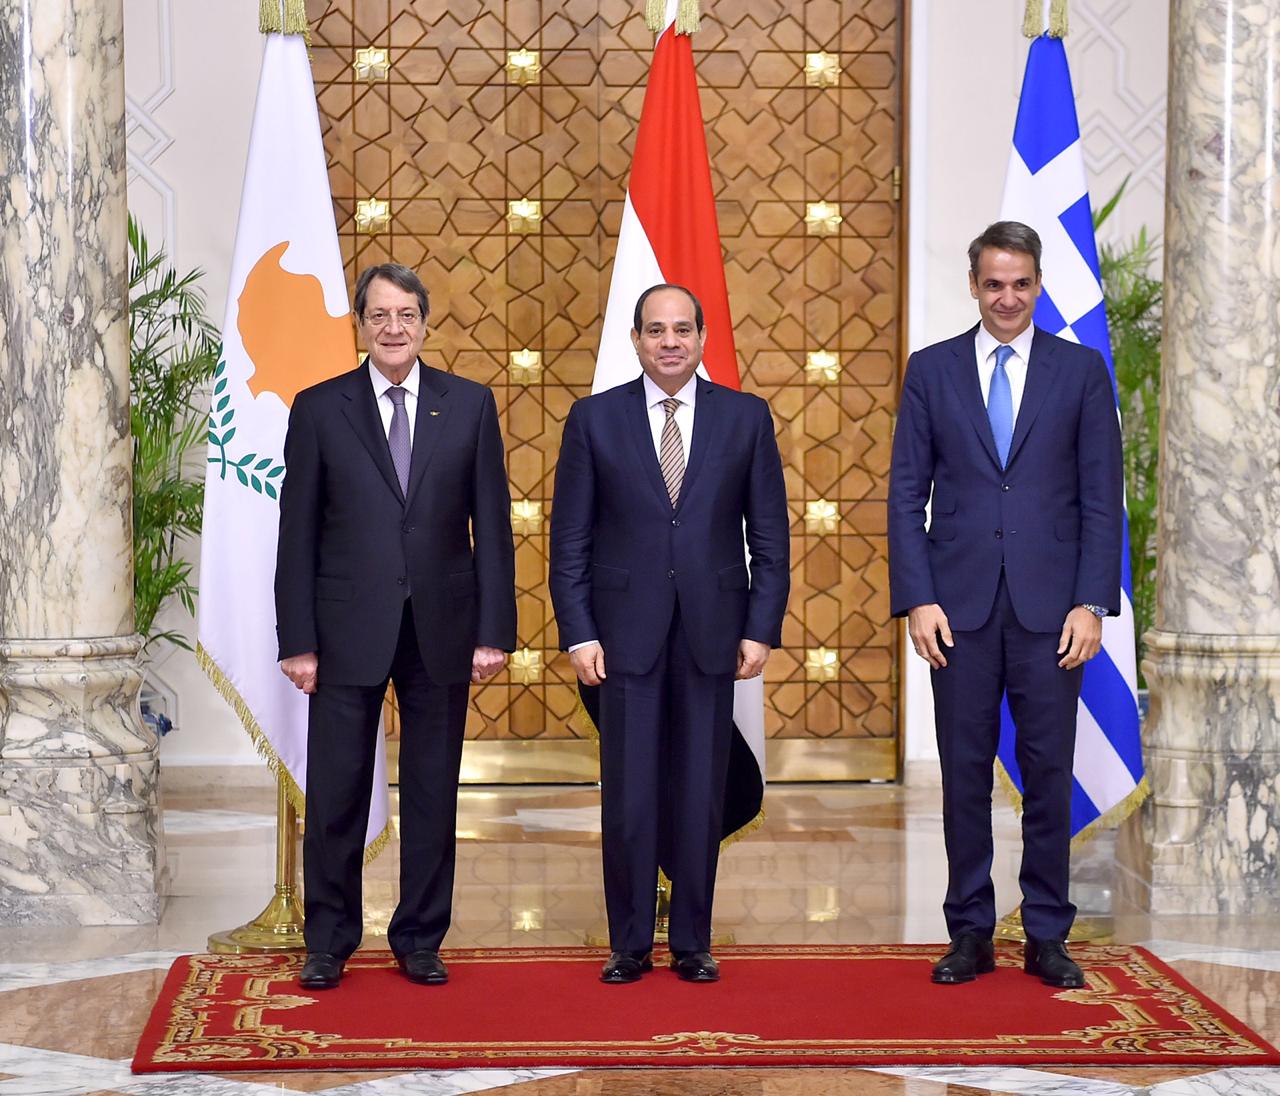 الرئيس السيسي يتوسط رئيس وزراء اليونان ورئيس قبرص